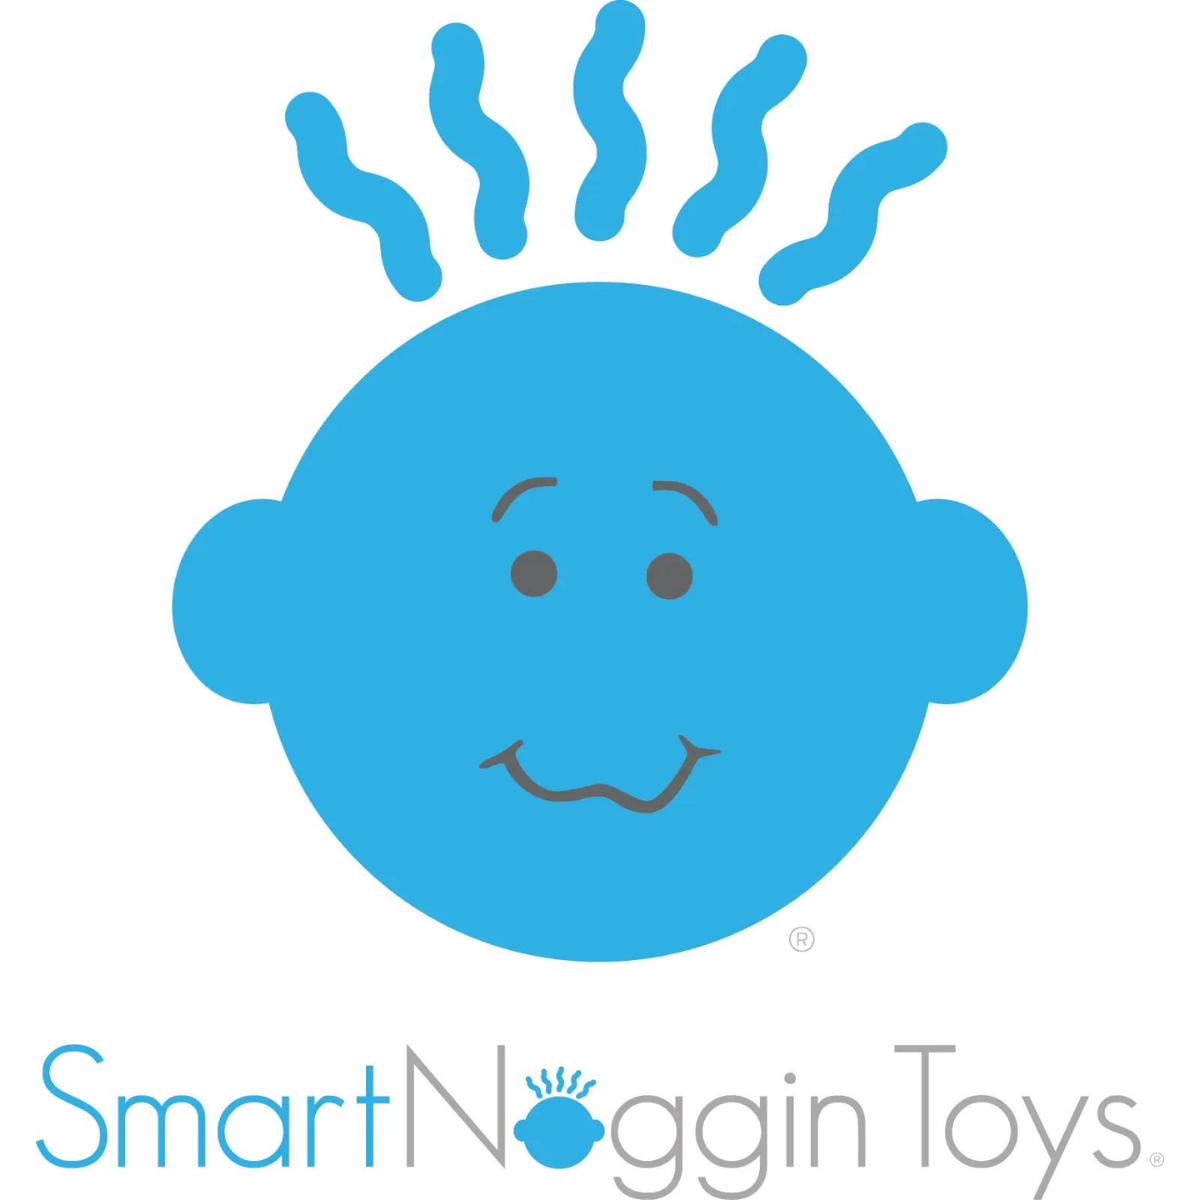 Smart Noggin Toys